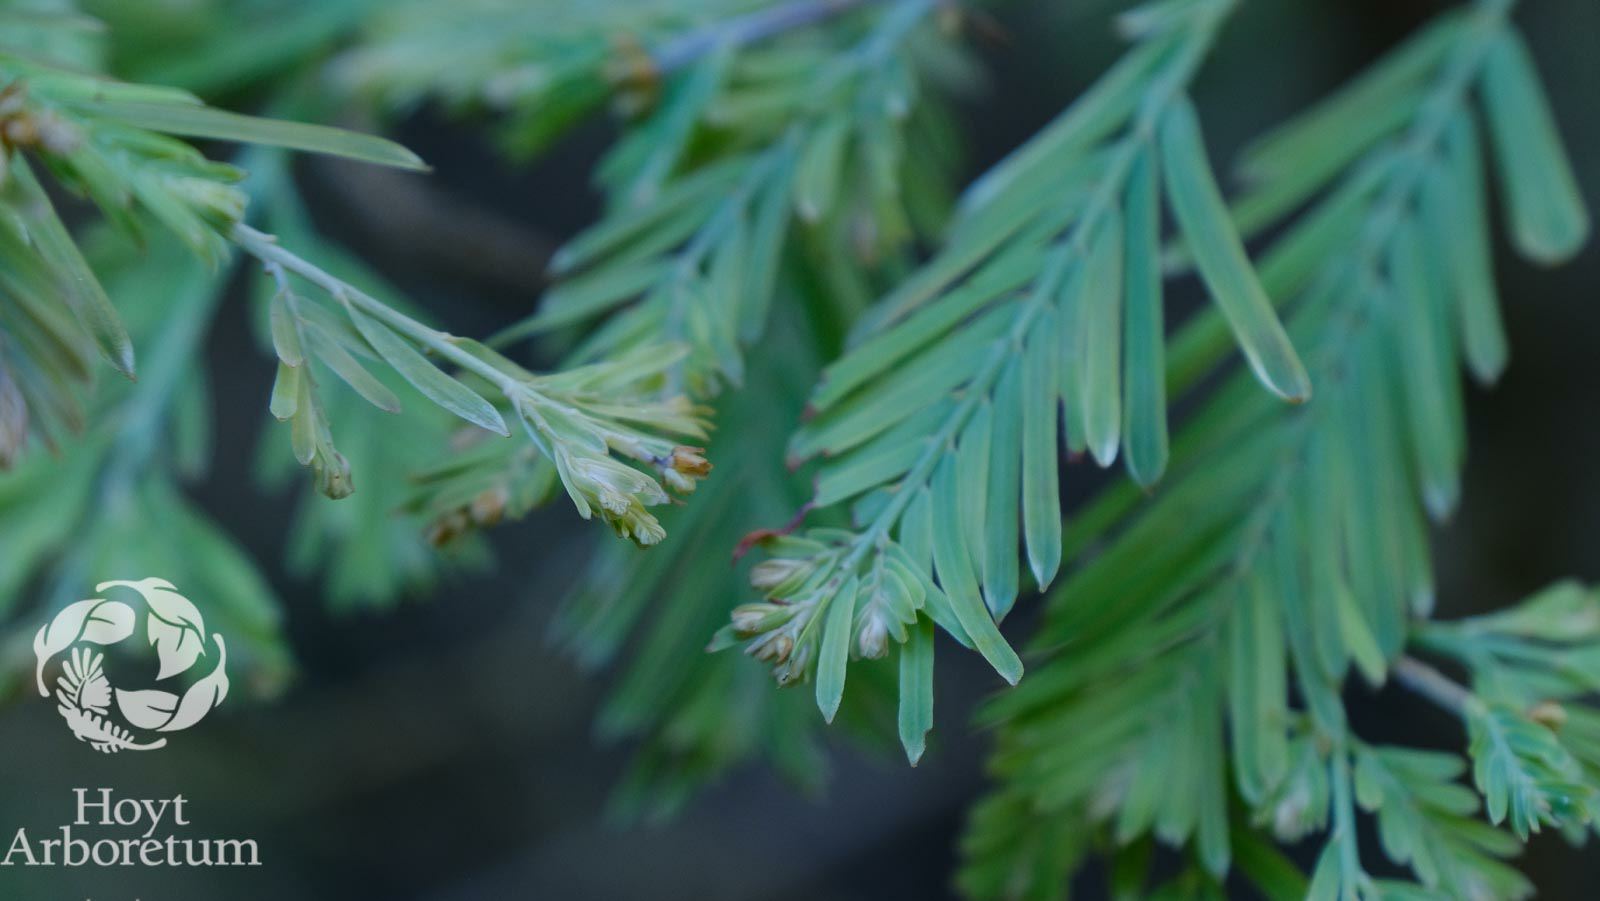 Metasequoia glyptostroboides 'Schirrmann's Nordlicht' - Schirrmann's Nordlicht dawn redwood